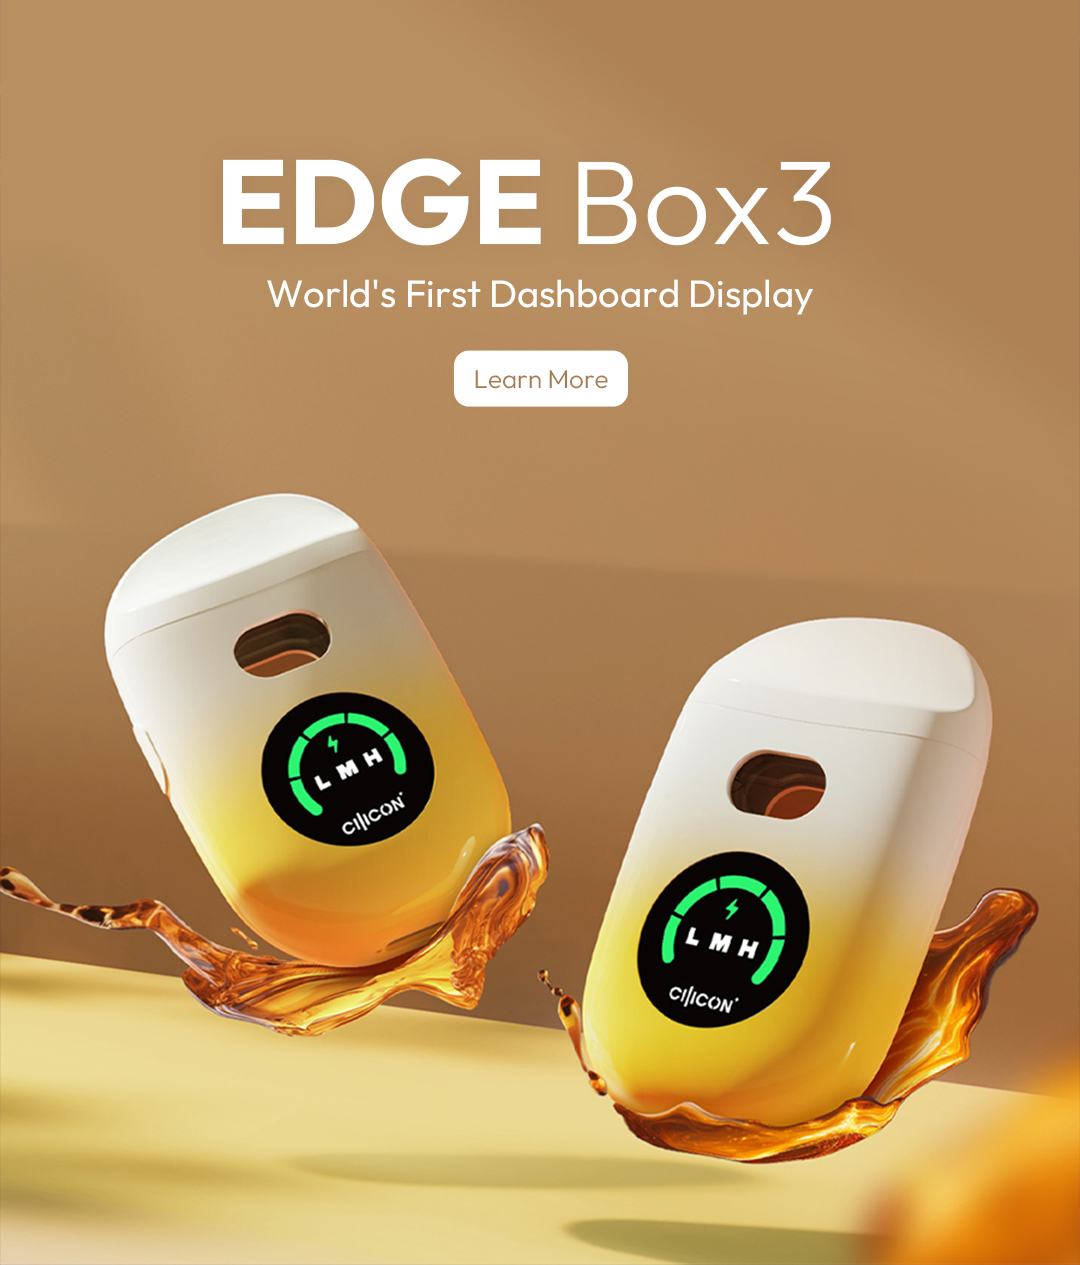 EDGE Box3